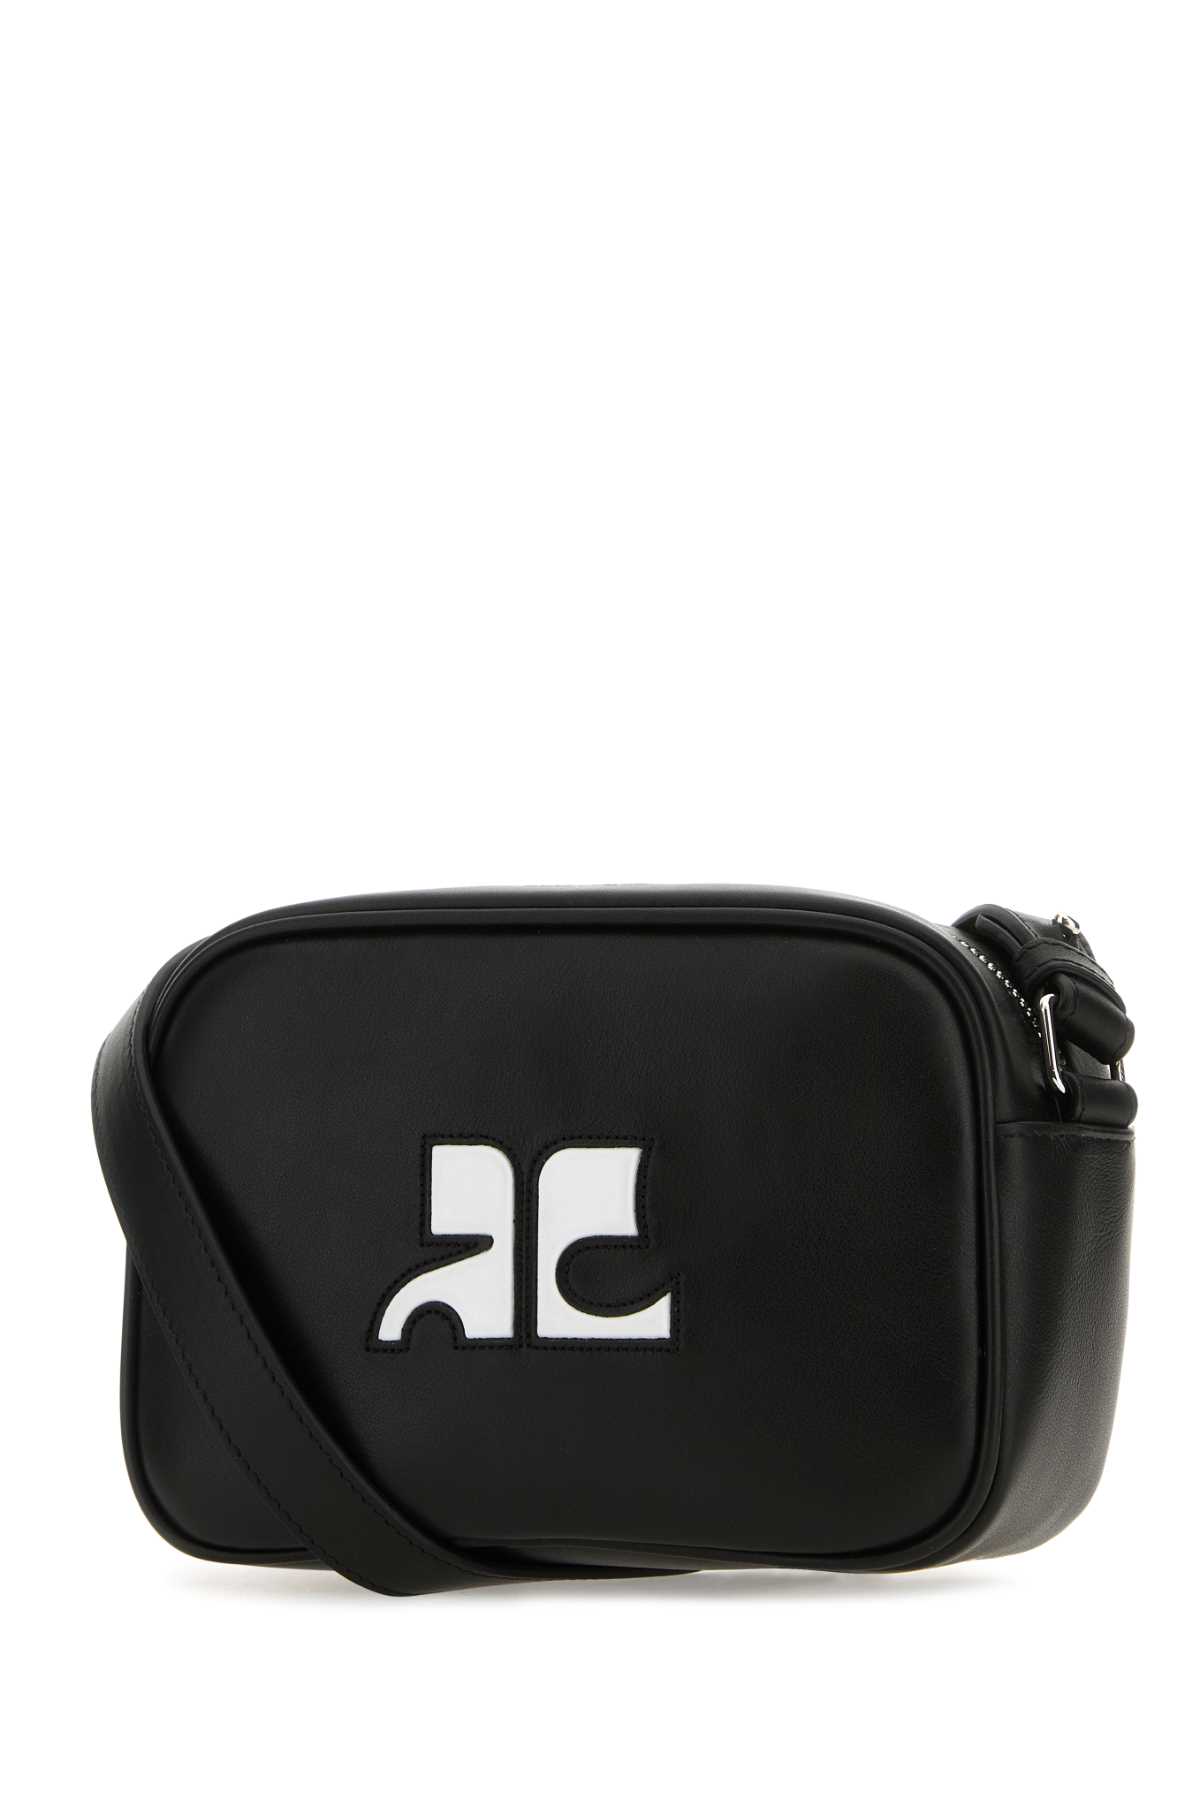 Courrèges Black Leather Rã©ã©dition Shoulder Bag